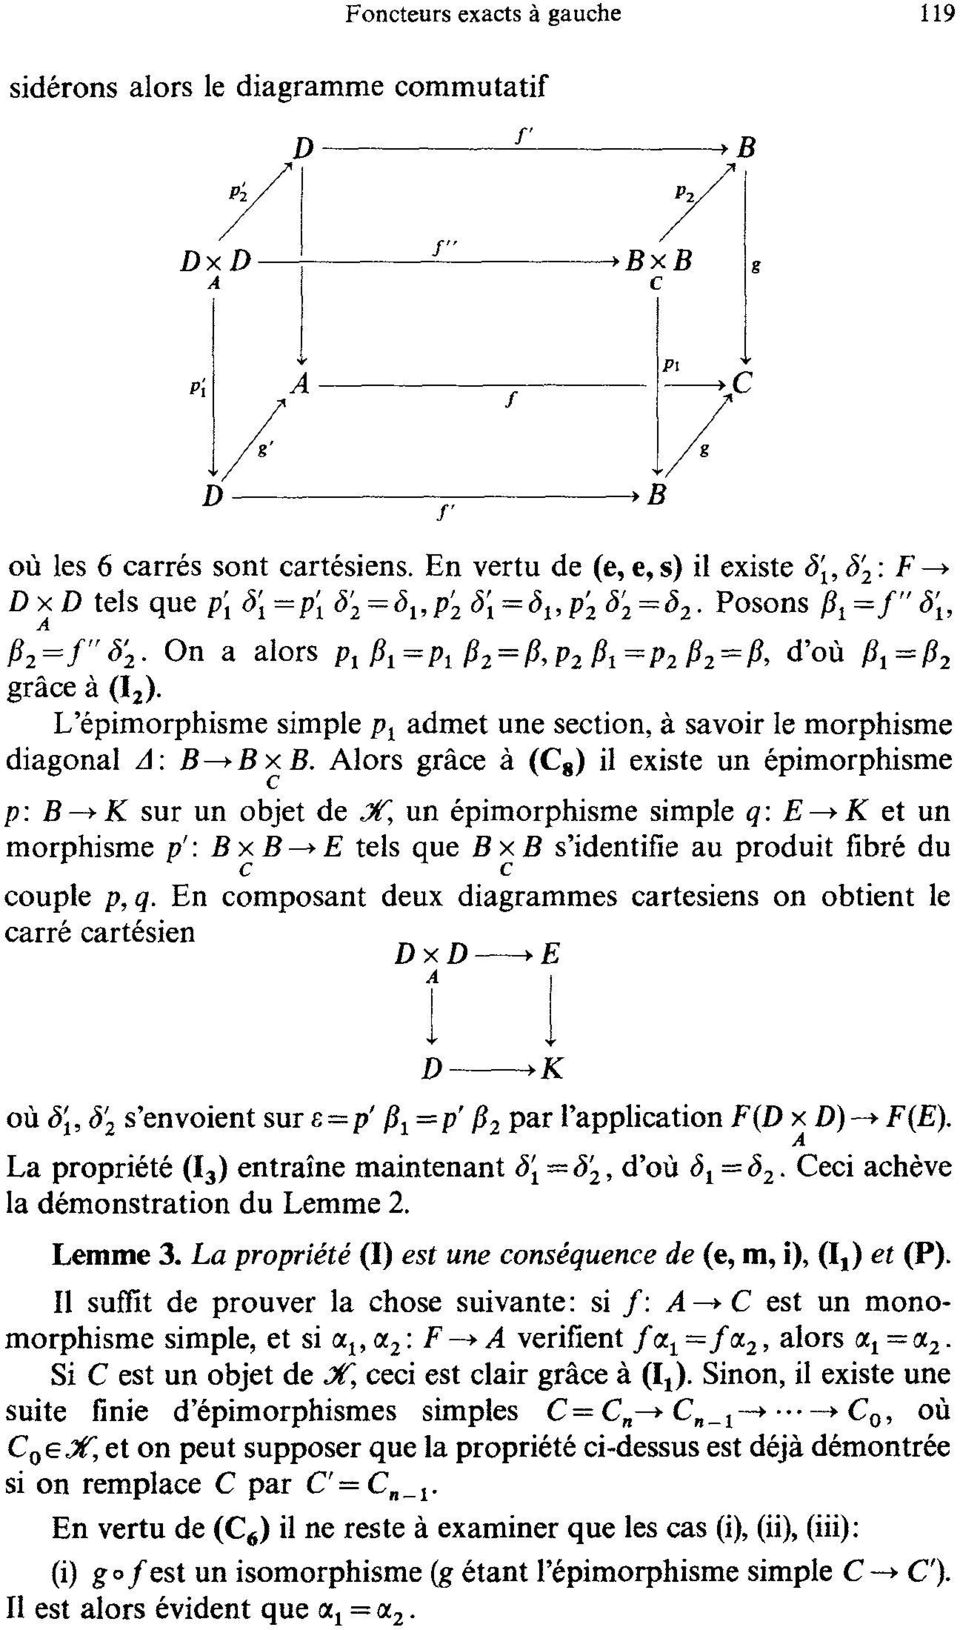 '6pimorphisme simple Pl admet une section, ~t savoir le morphisme diagonal A: B--~B B.